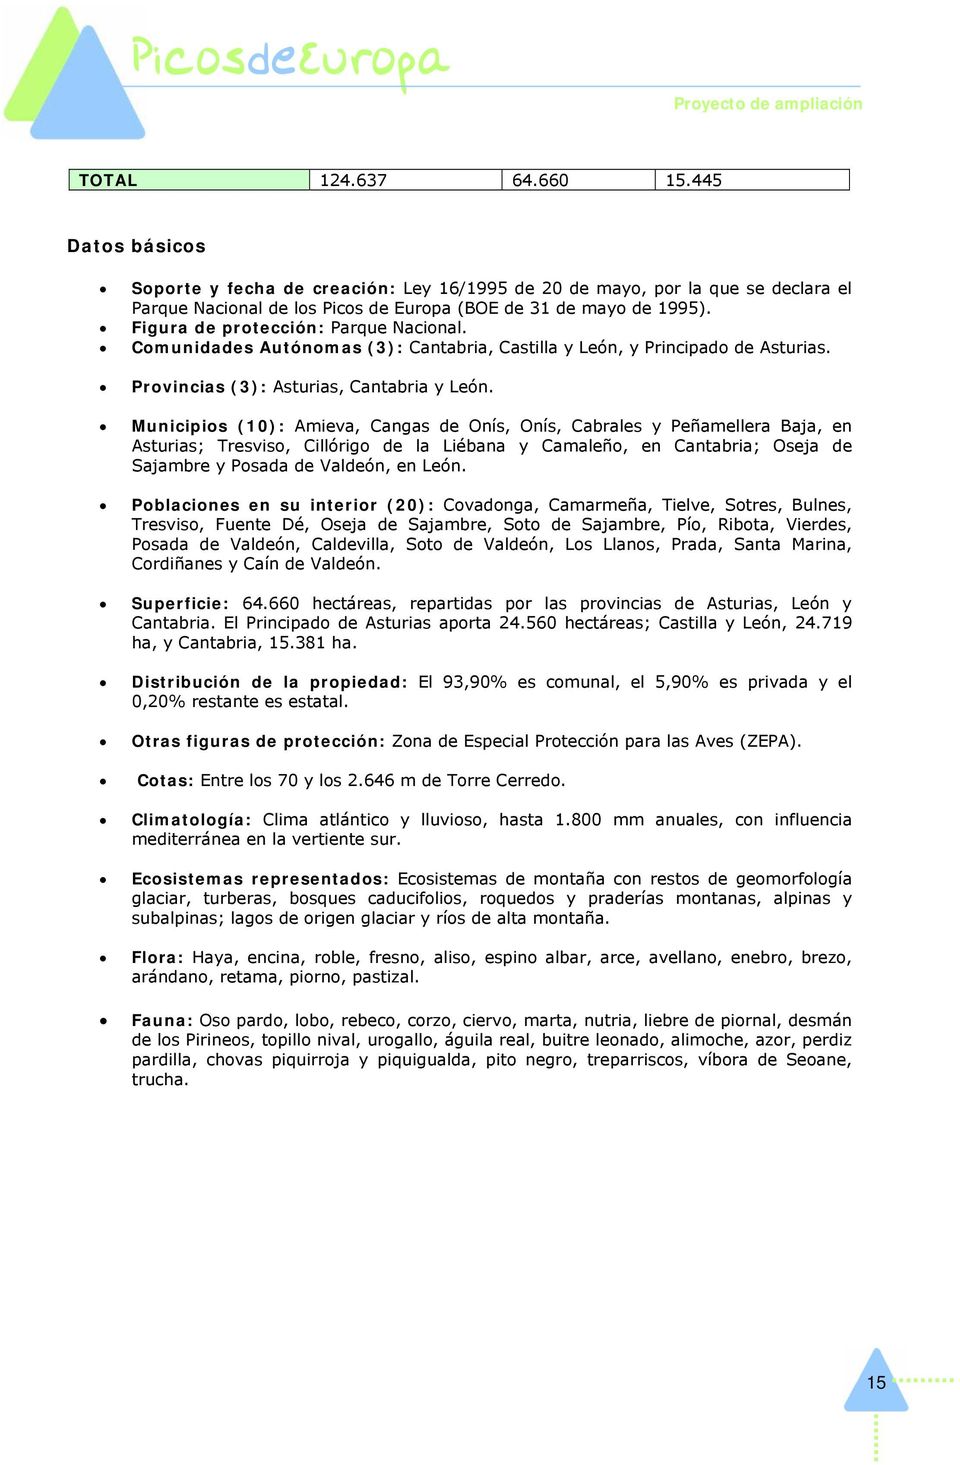 Municipios (10): Amieva, Cangas de Onís, Onís, Cabrales y Peñamellera Baja, en Asturias; Tresviso, Cillórigo de la Liébana y Camaleño, en Cantabria; Oseja de Sajambre y Posada de Valdeón, en León.